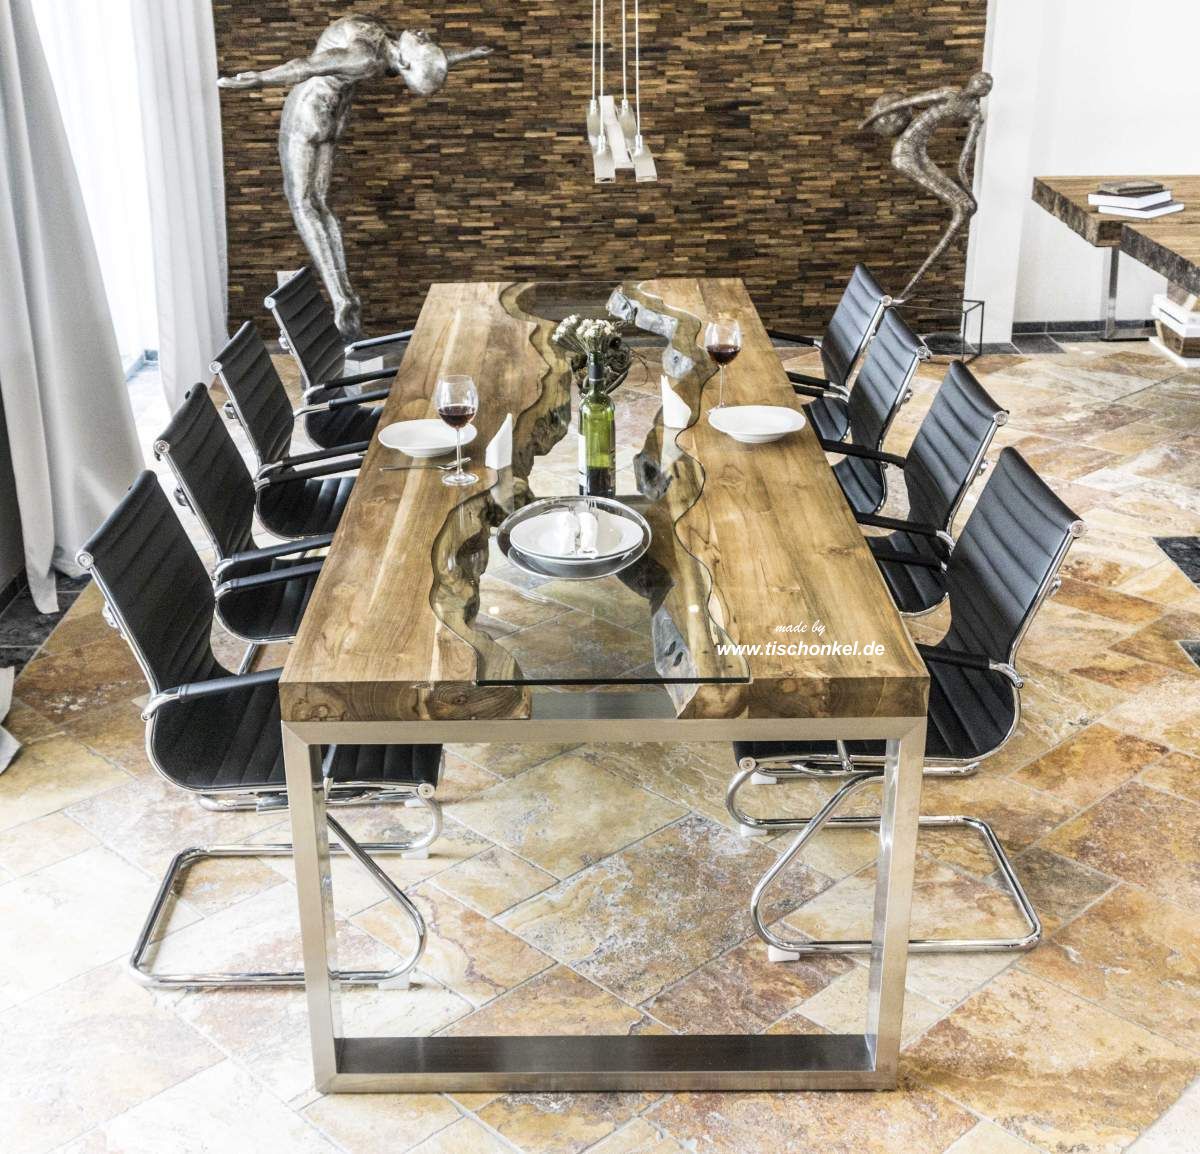 Eleganter Esstisch aus Holz - Der Tischonkel